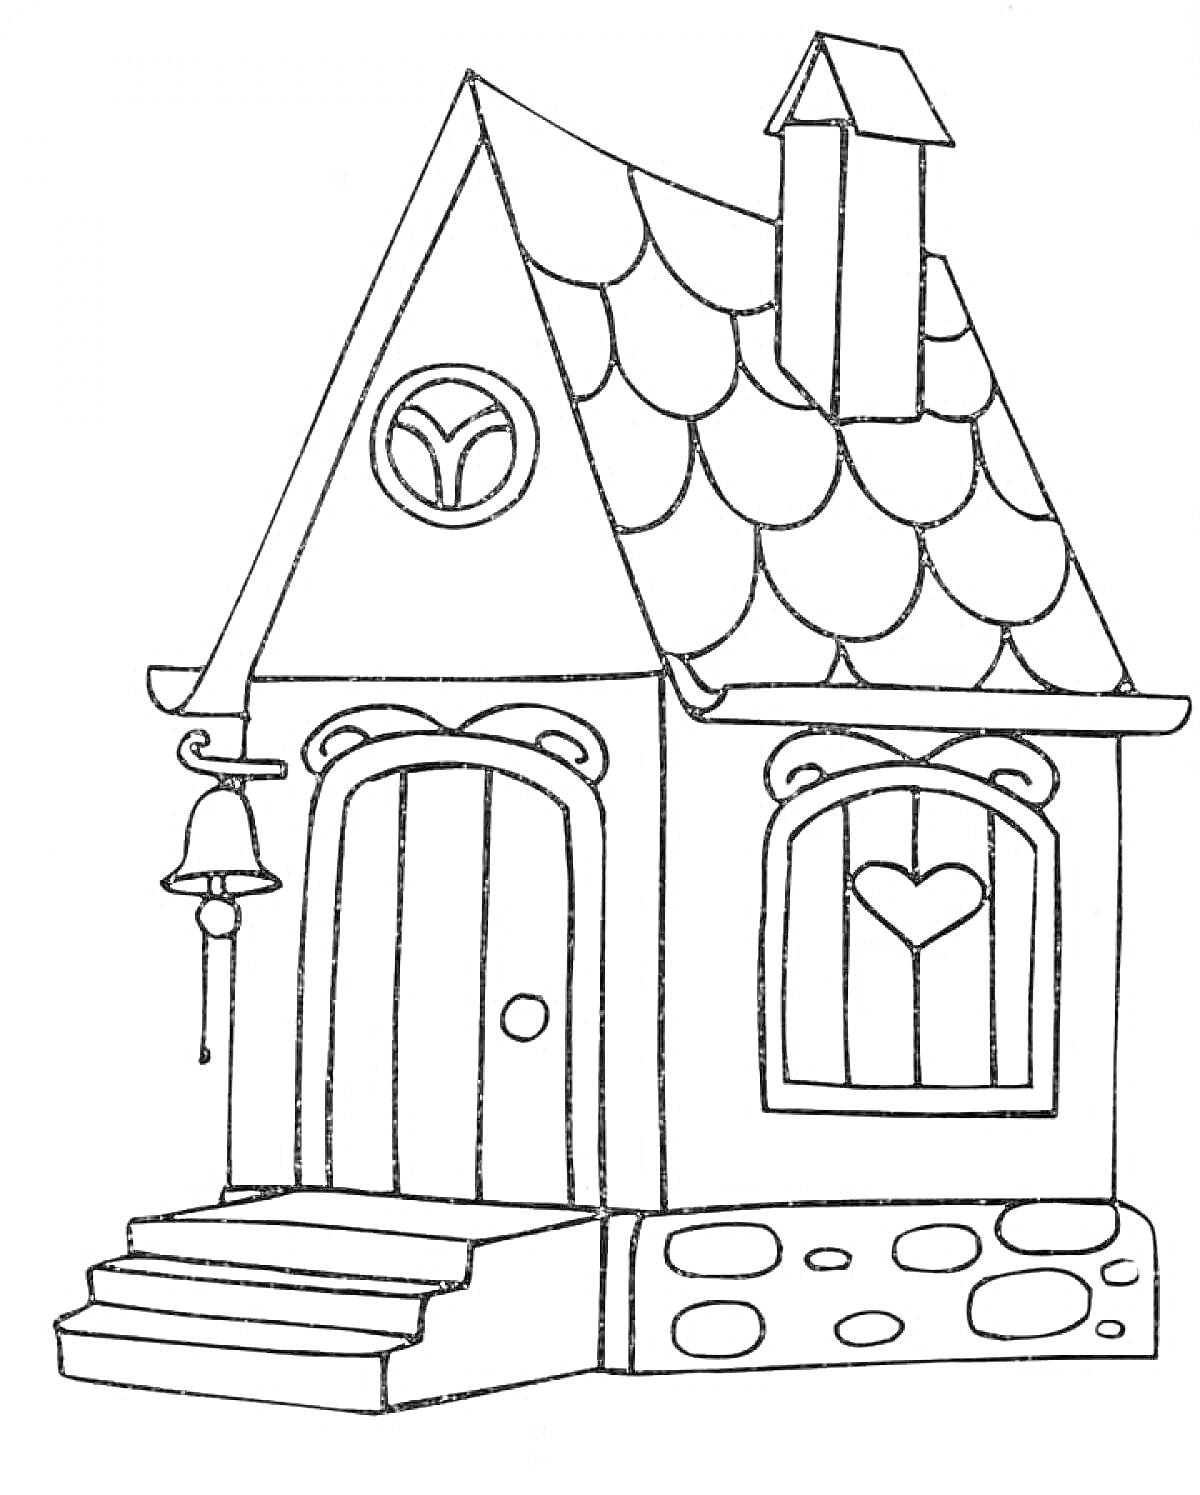 На раскраске изображено: Дом, Крыльцо, Колокол, Труба, Крыша, Окна, Сердца, Ступени